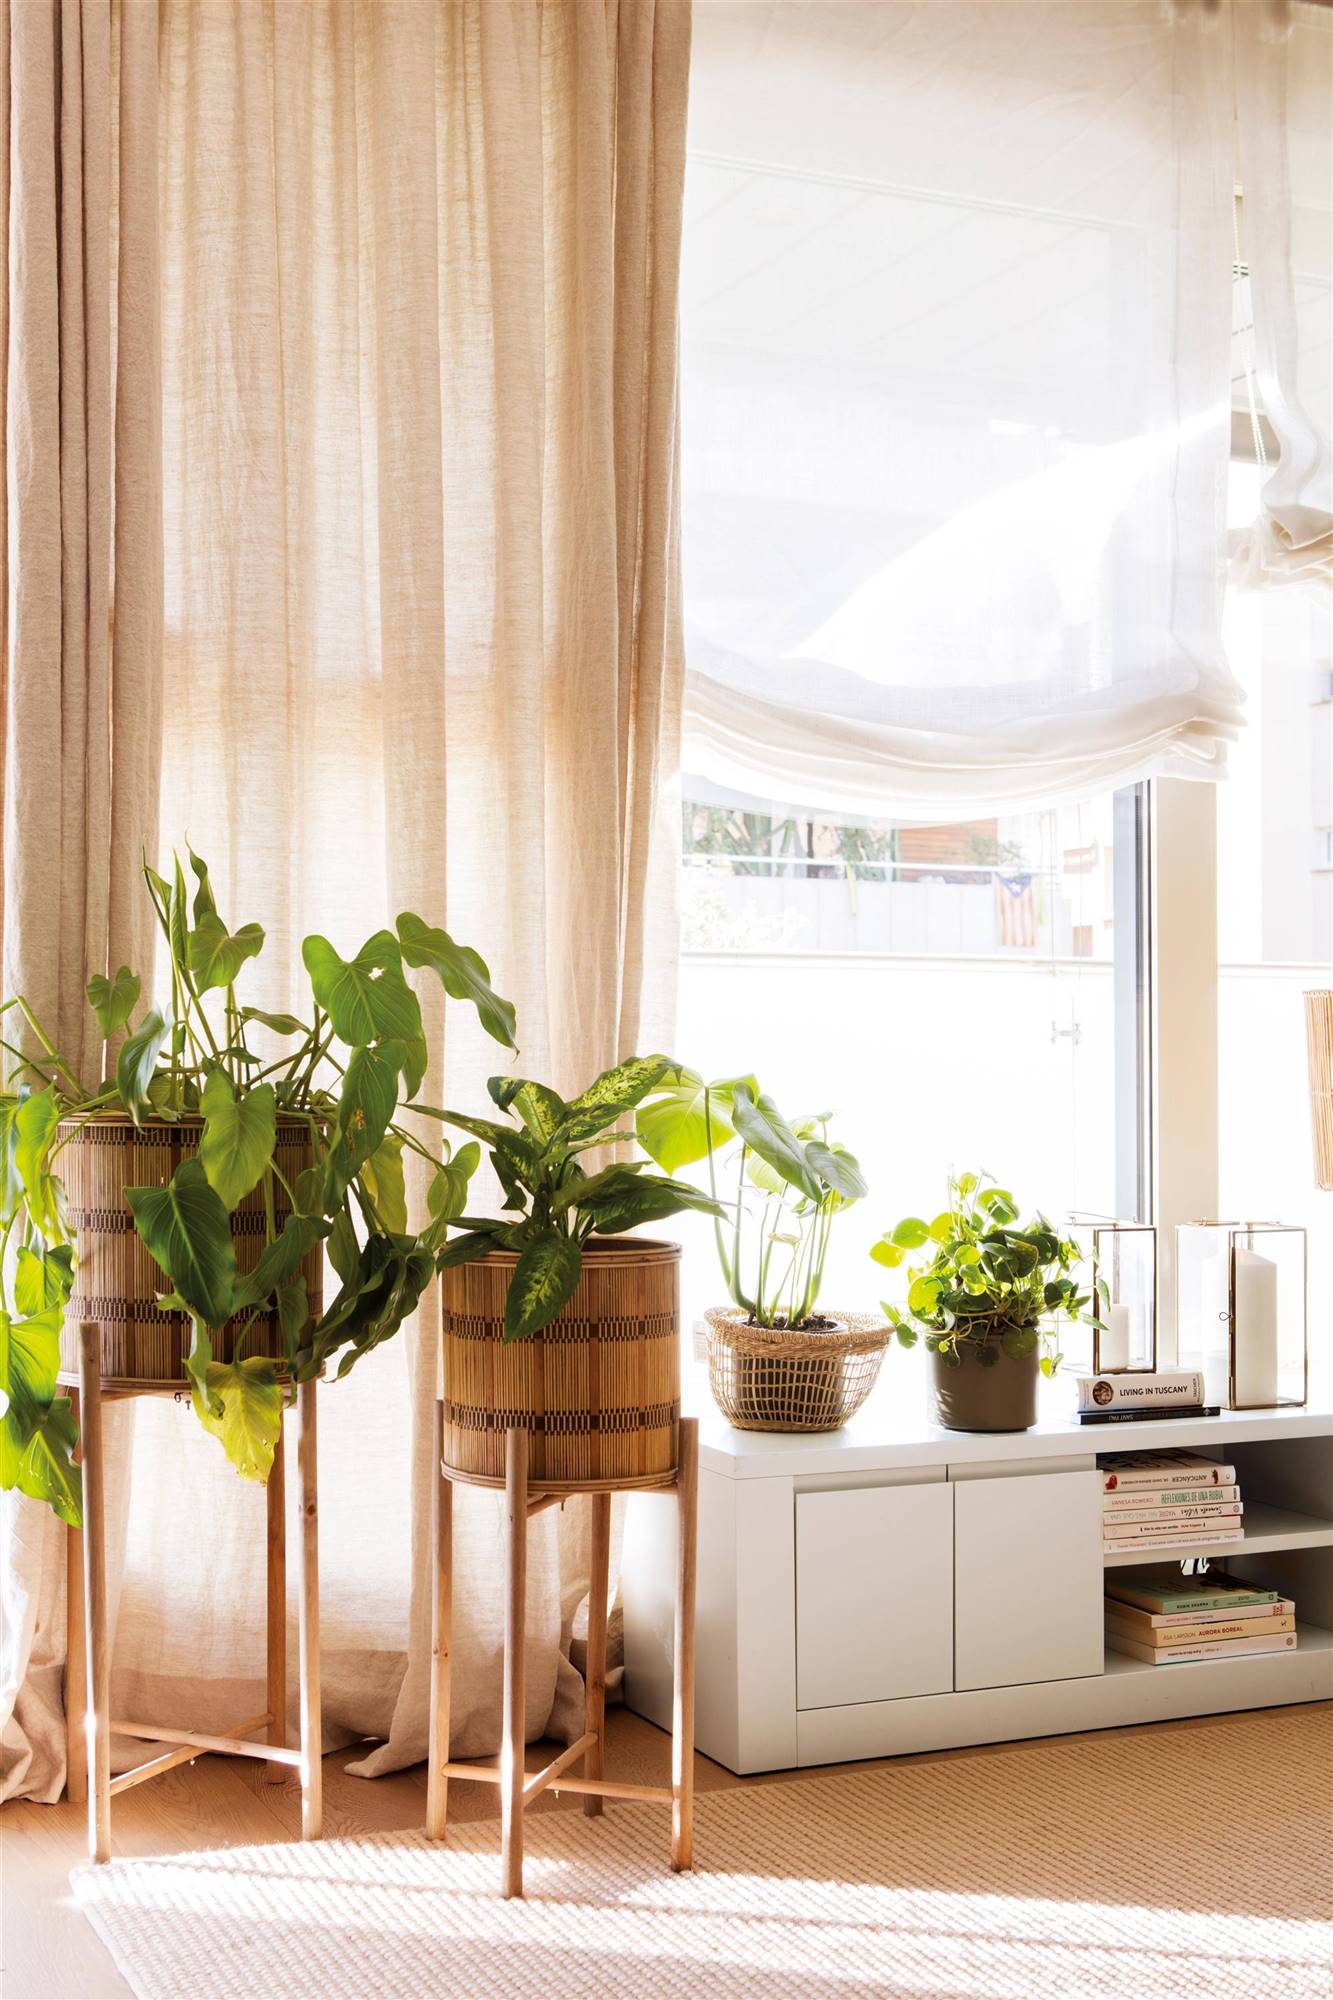 Plantas en maceteros altos y cortinas de lino que arrastran en color tostado.